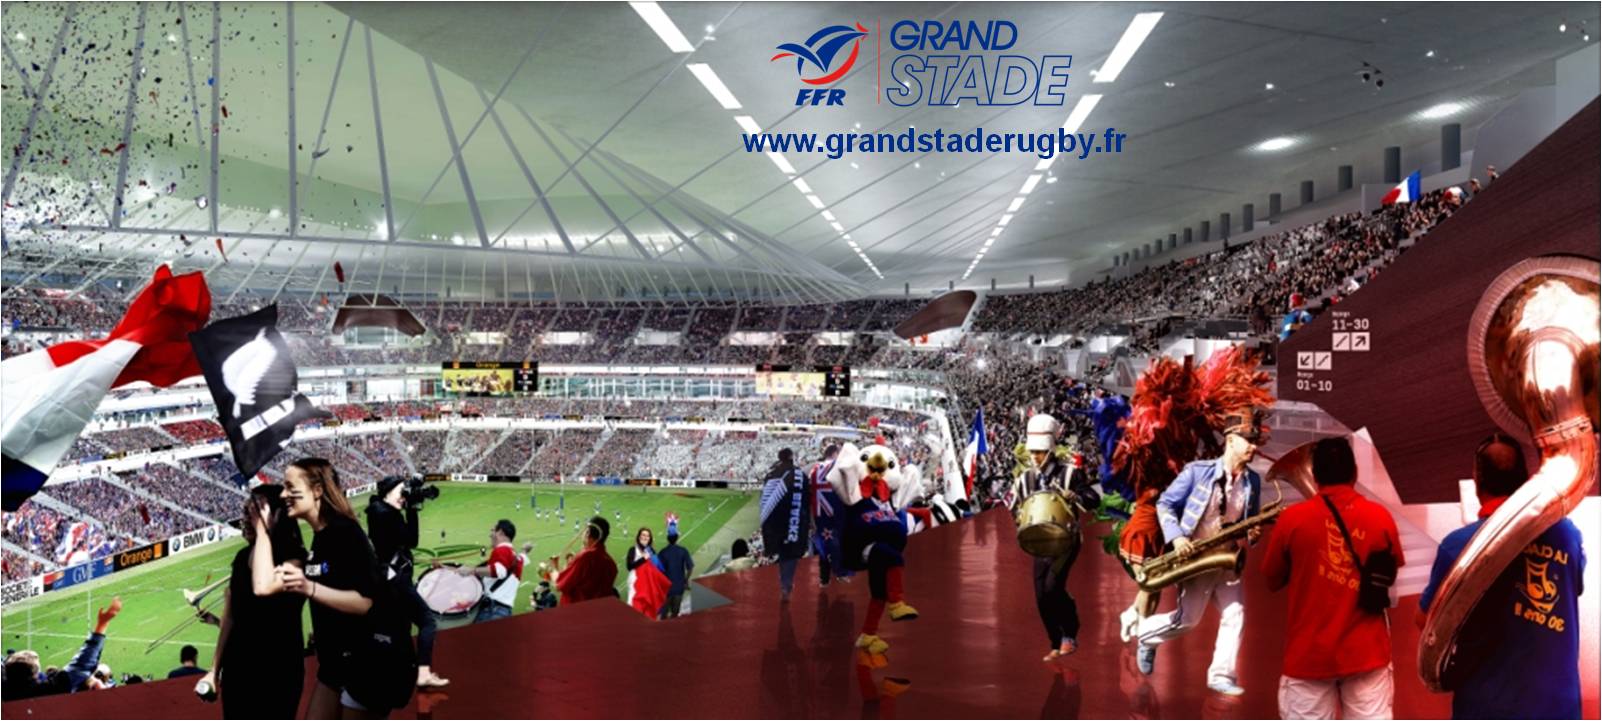 Grande Stade de la Fédération Français de Rugby (FFR)